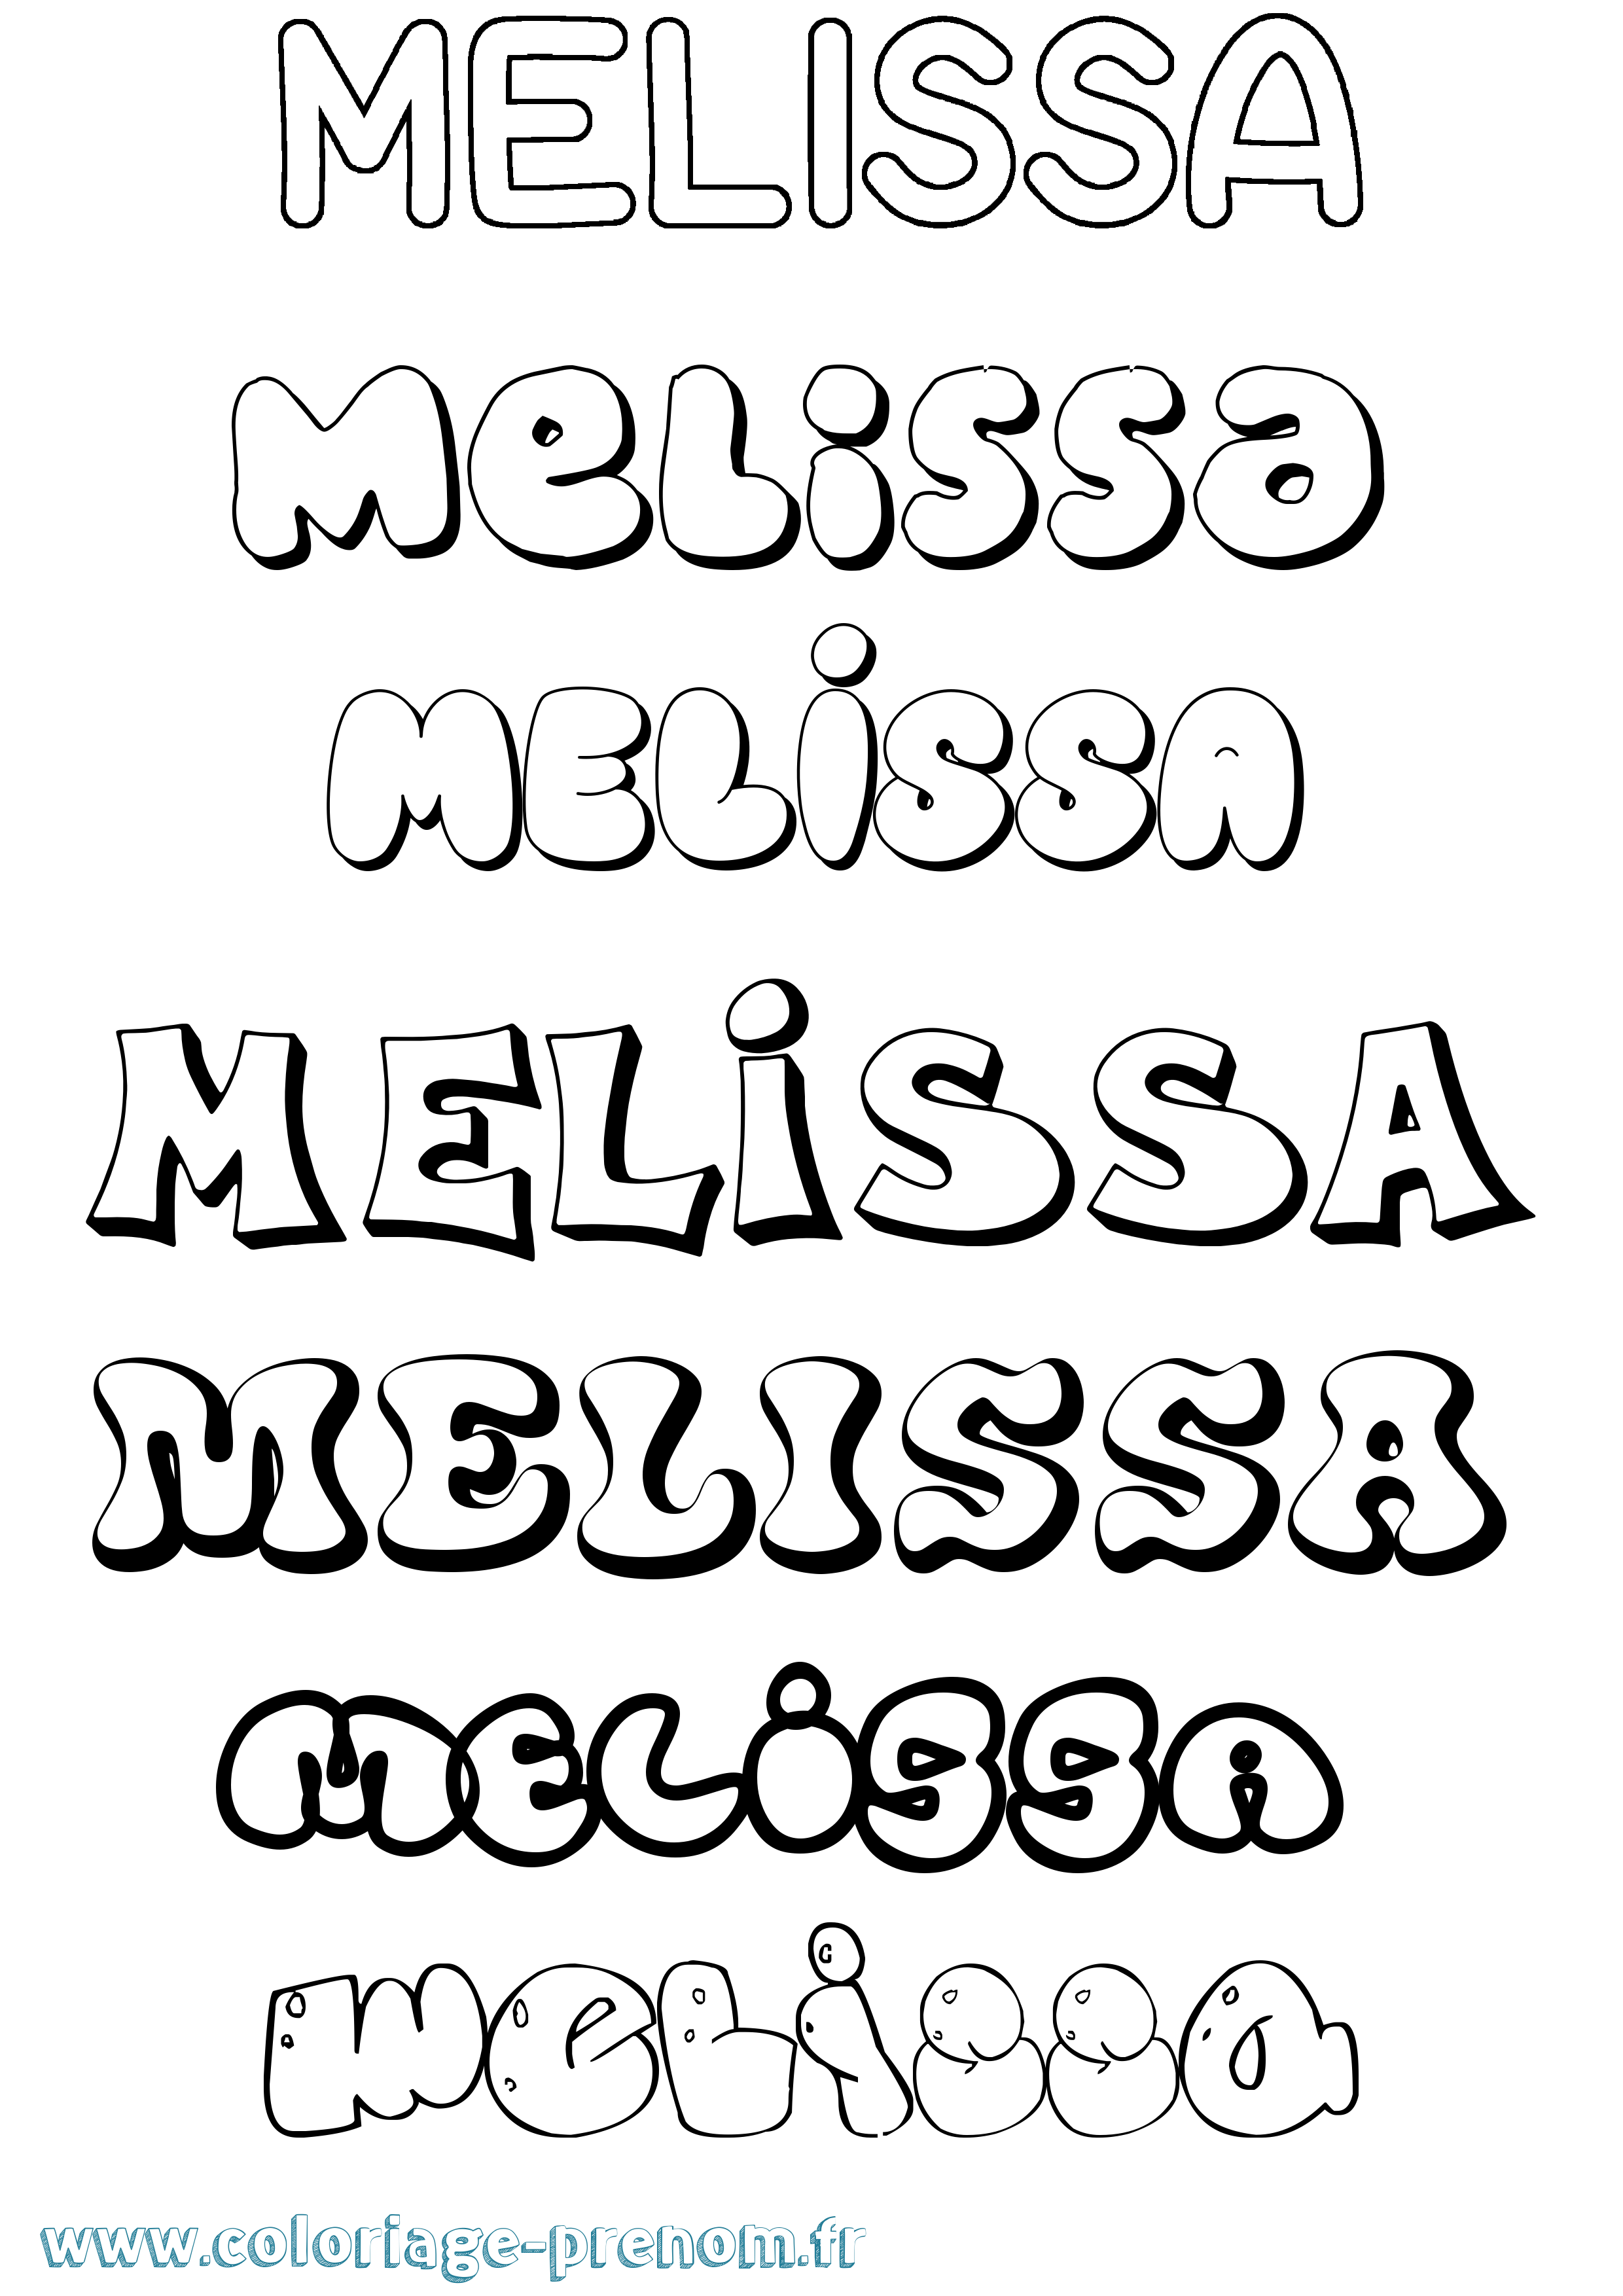 Coloriage prénom Melissa Bubble